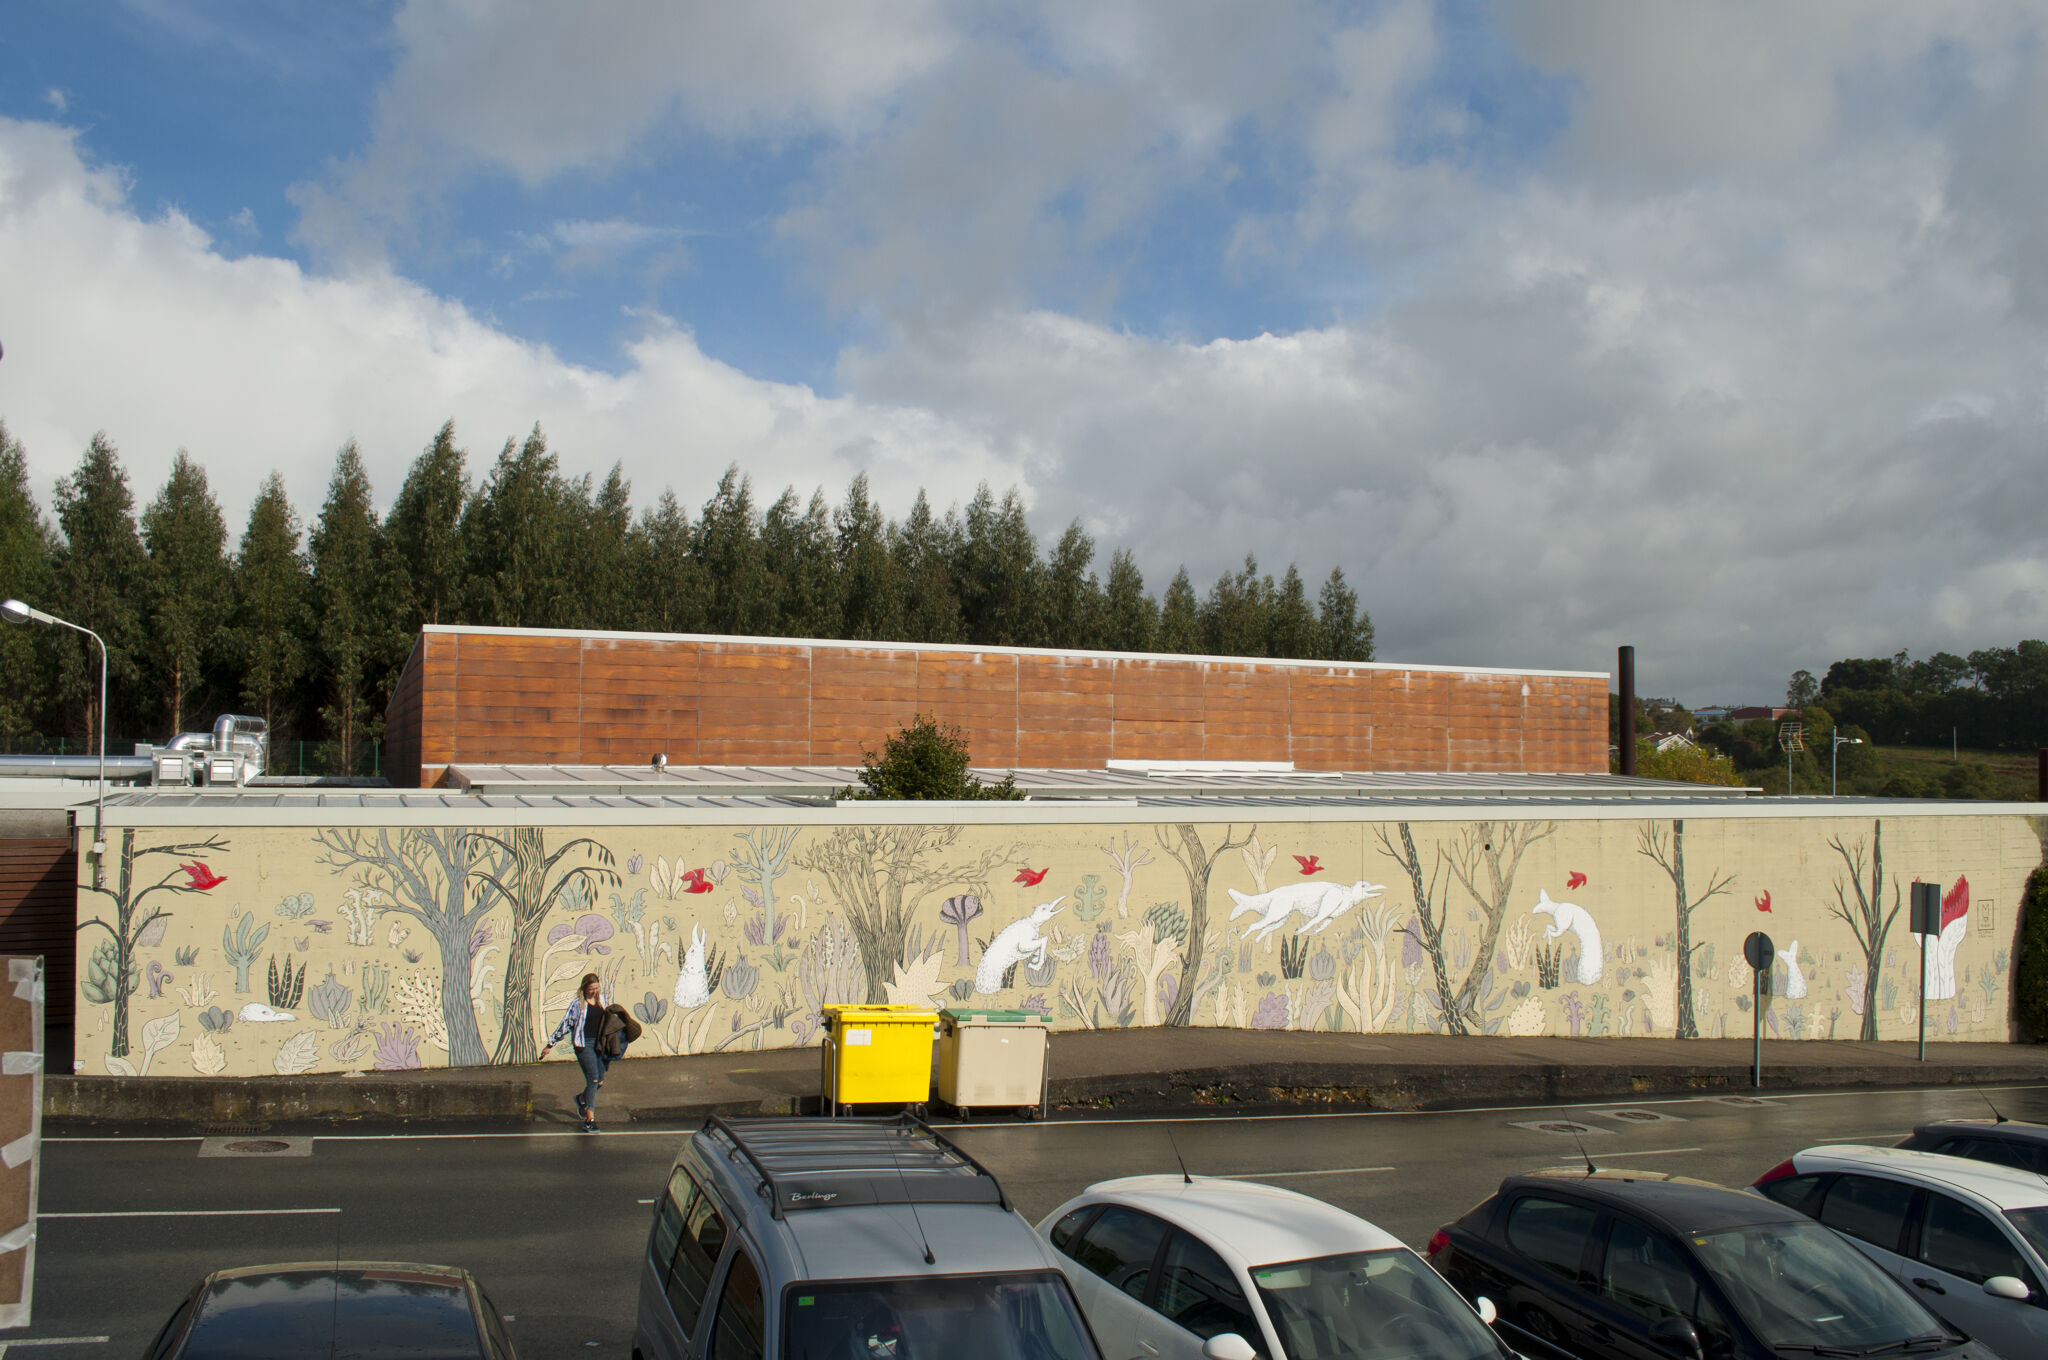 Minia Regos&mdash;Wall by MINIA REGOS for DESORDES CREATIVAS 2018 in Ordes (Galicia-Spain)